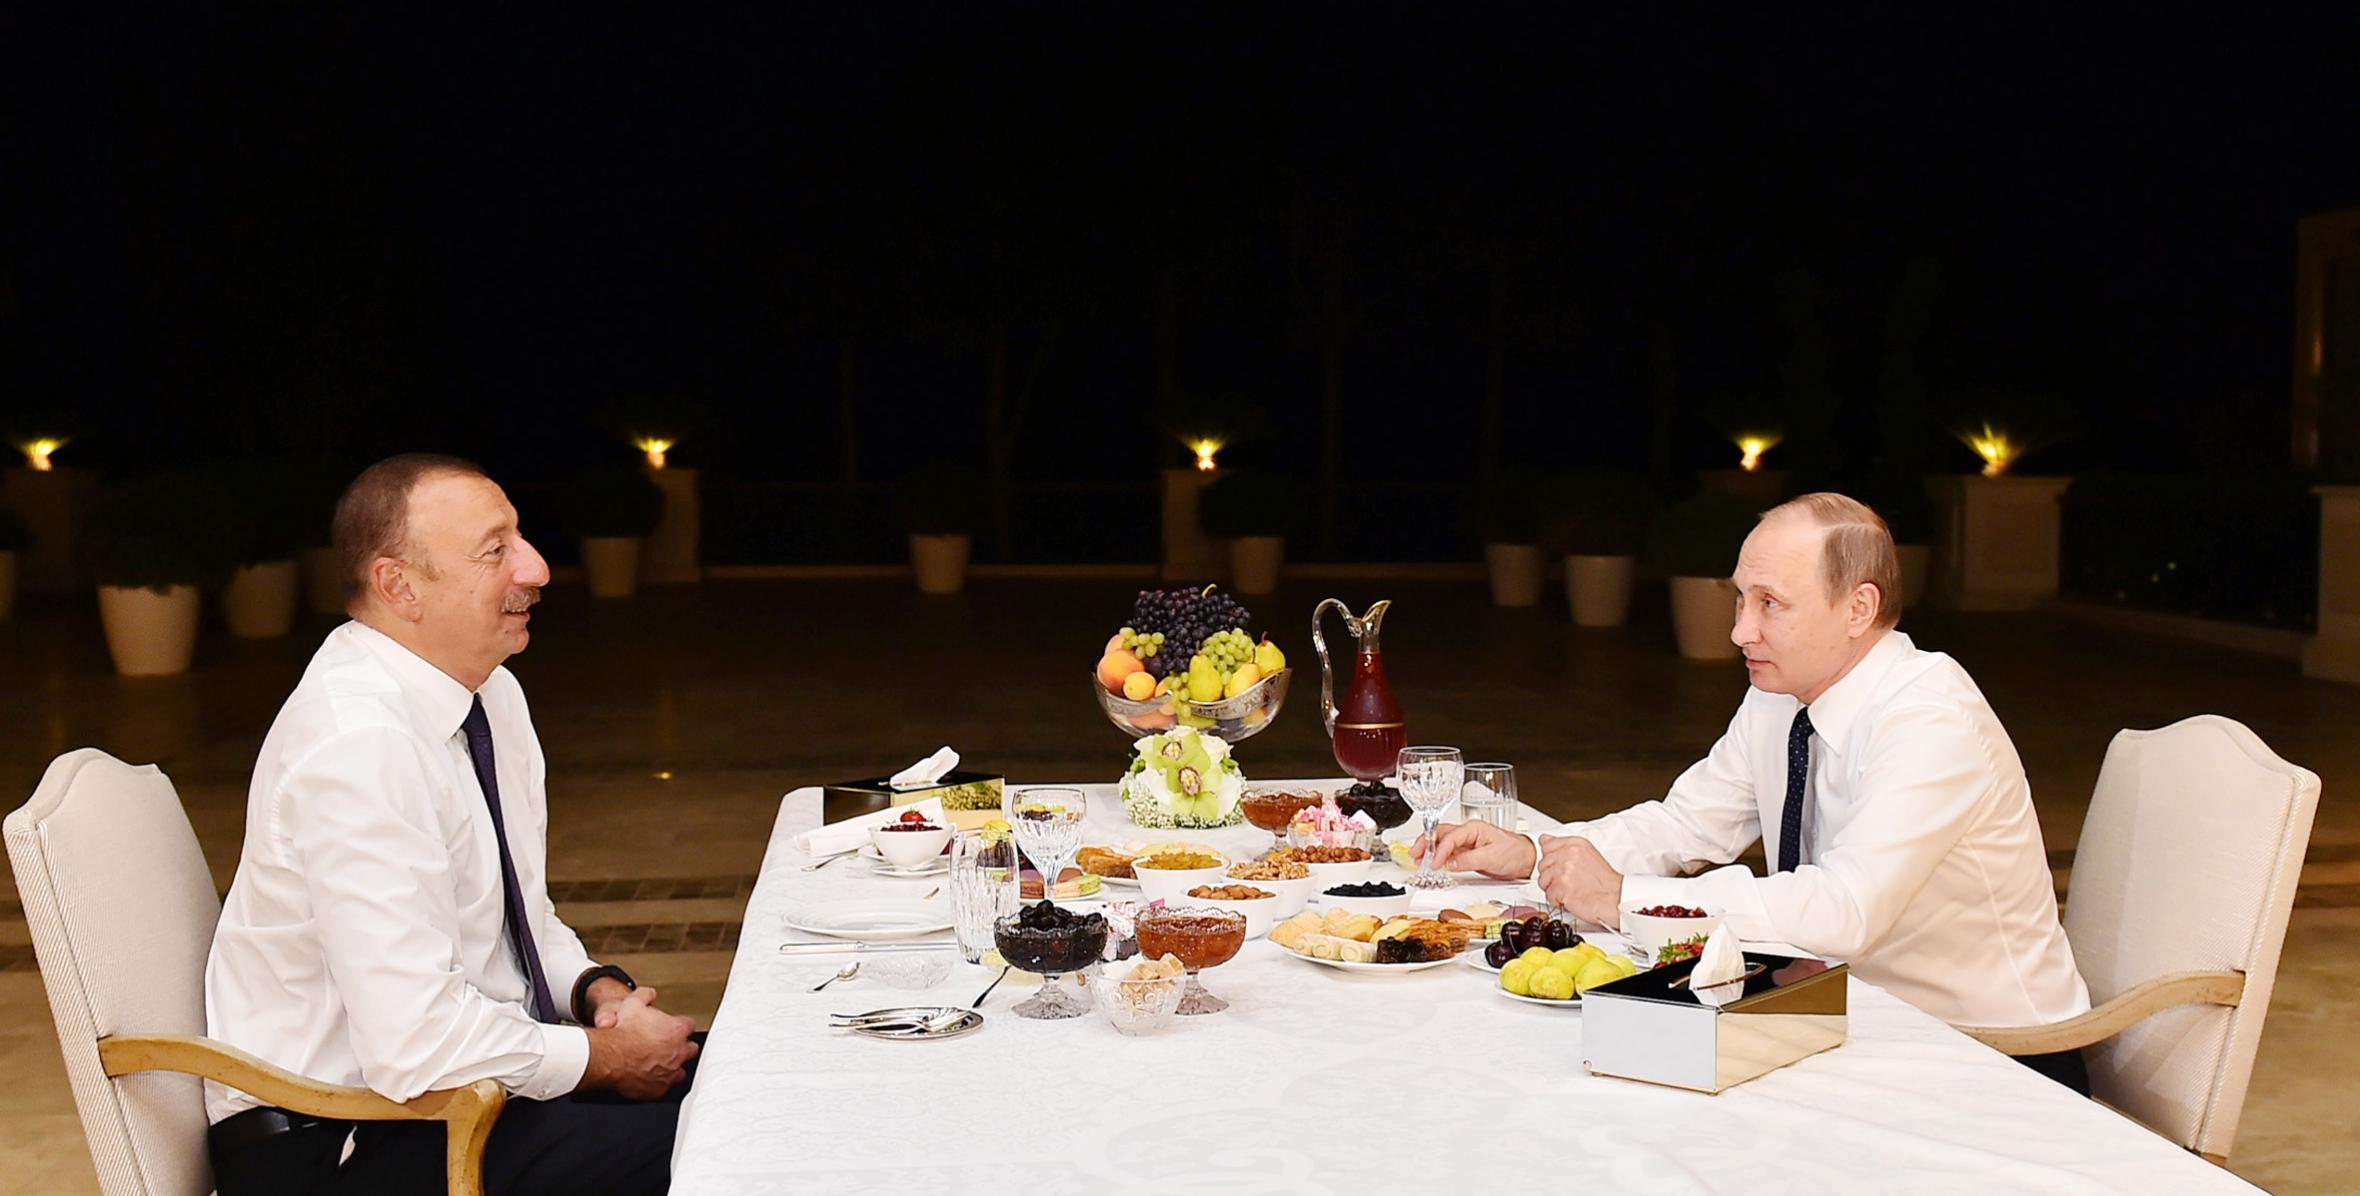 İlham Əliyev Rusiya Prezidenti Vladimir Putini evinə çay süfrəsinə dəvət edib